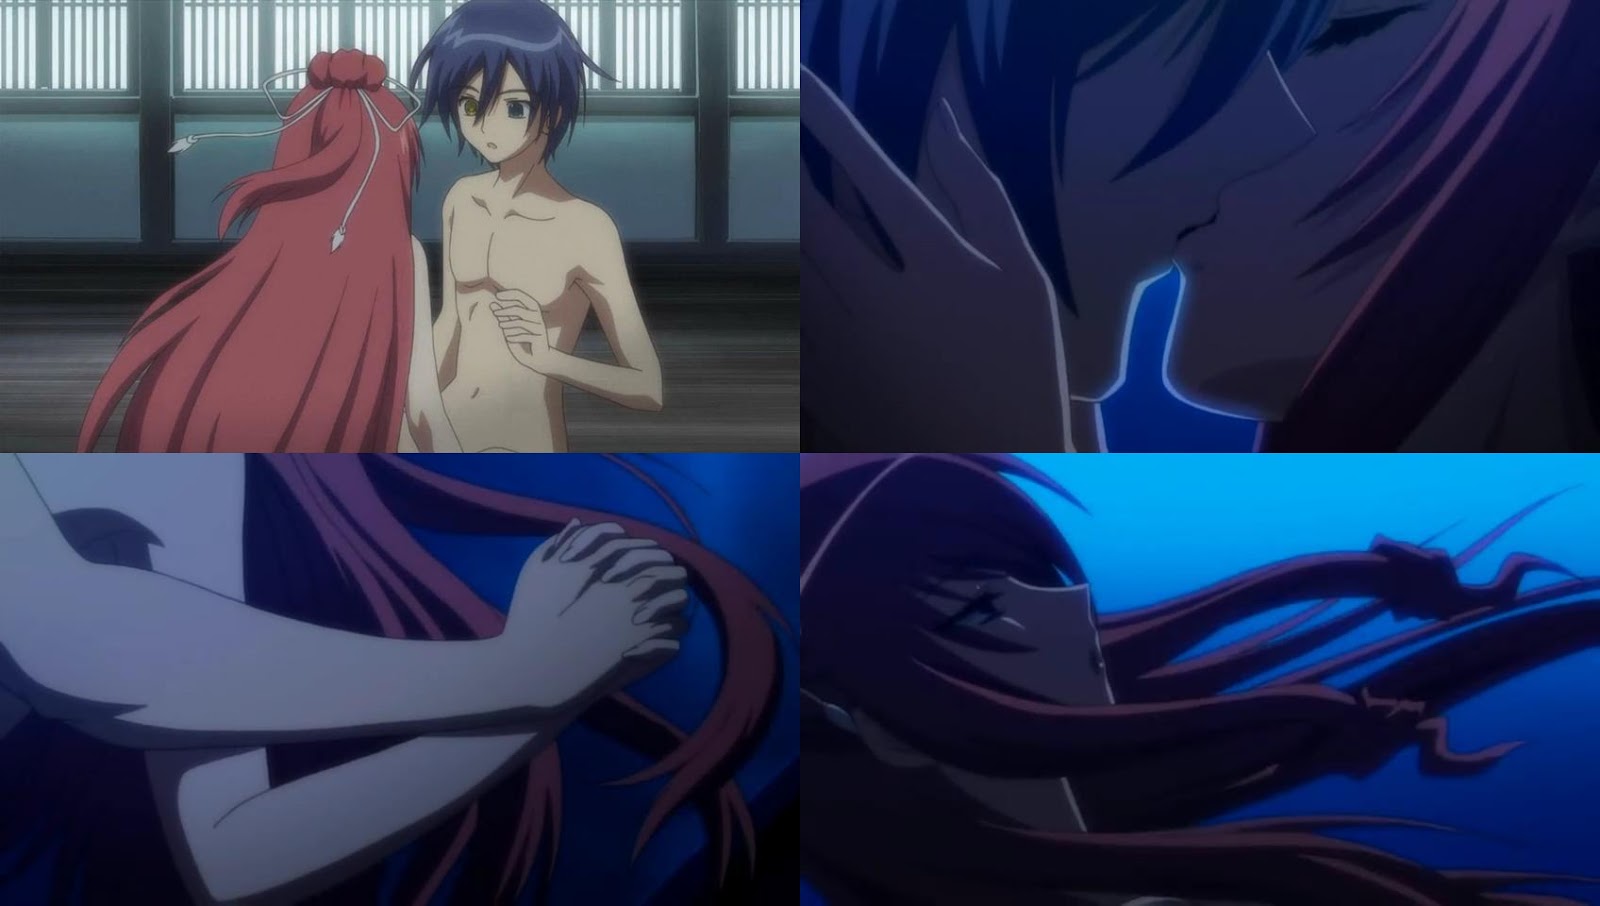 Um Beijo Muito Criativo e +1 Não Virjão  5 Cenas Marcantes em Animes #16  - IntoxiAnime